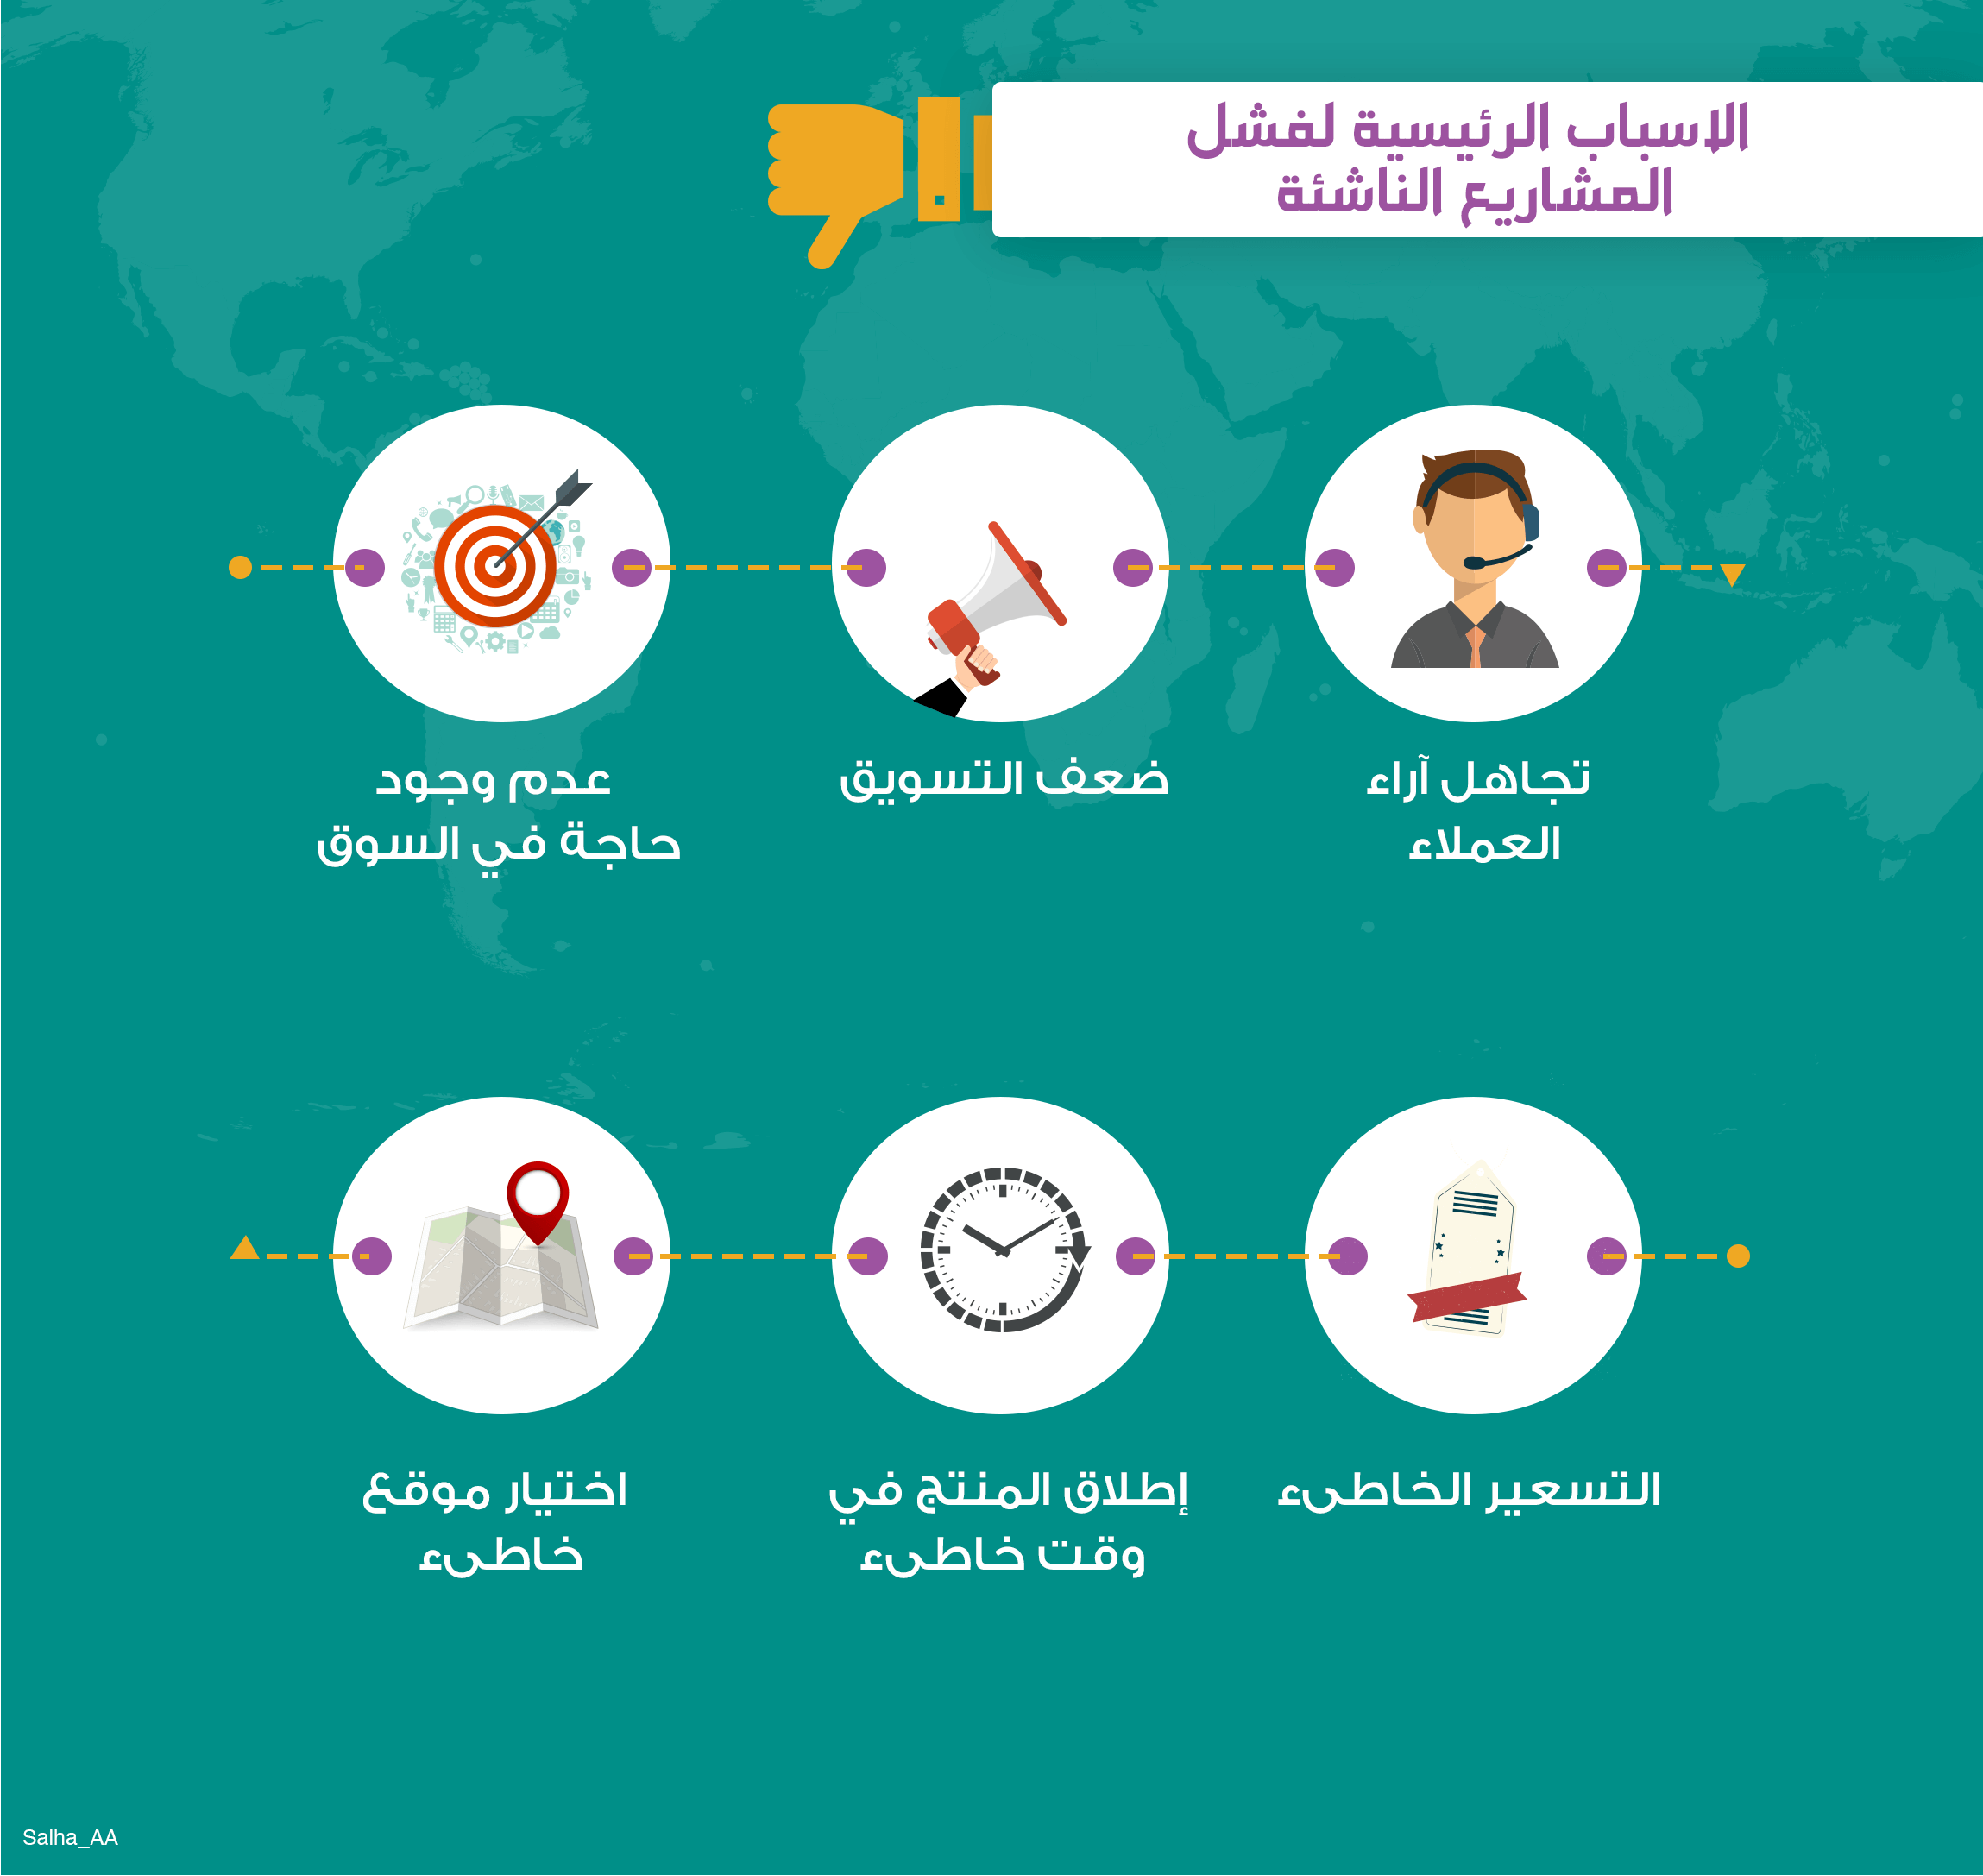 انفوجرافيك قائمة بأفضل المنصات لإنشاء محتوى مرأي 2019 أكاديمية أدميتاد العربية